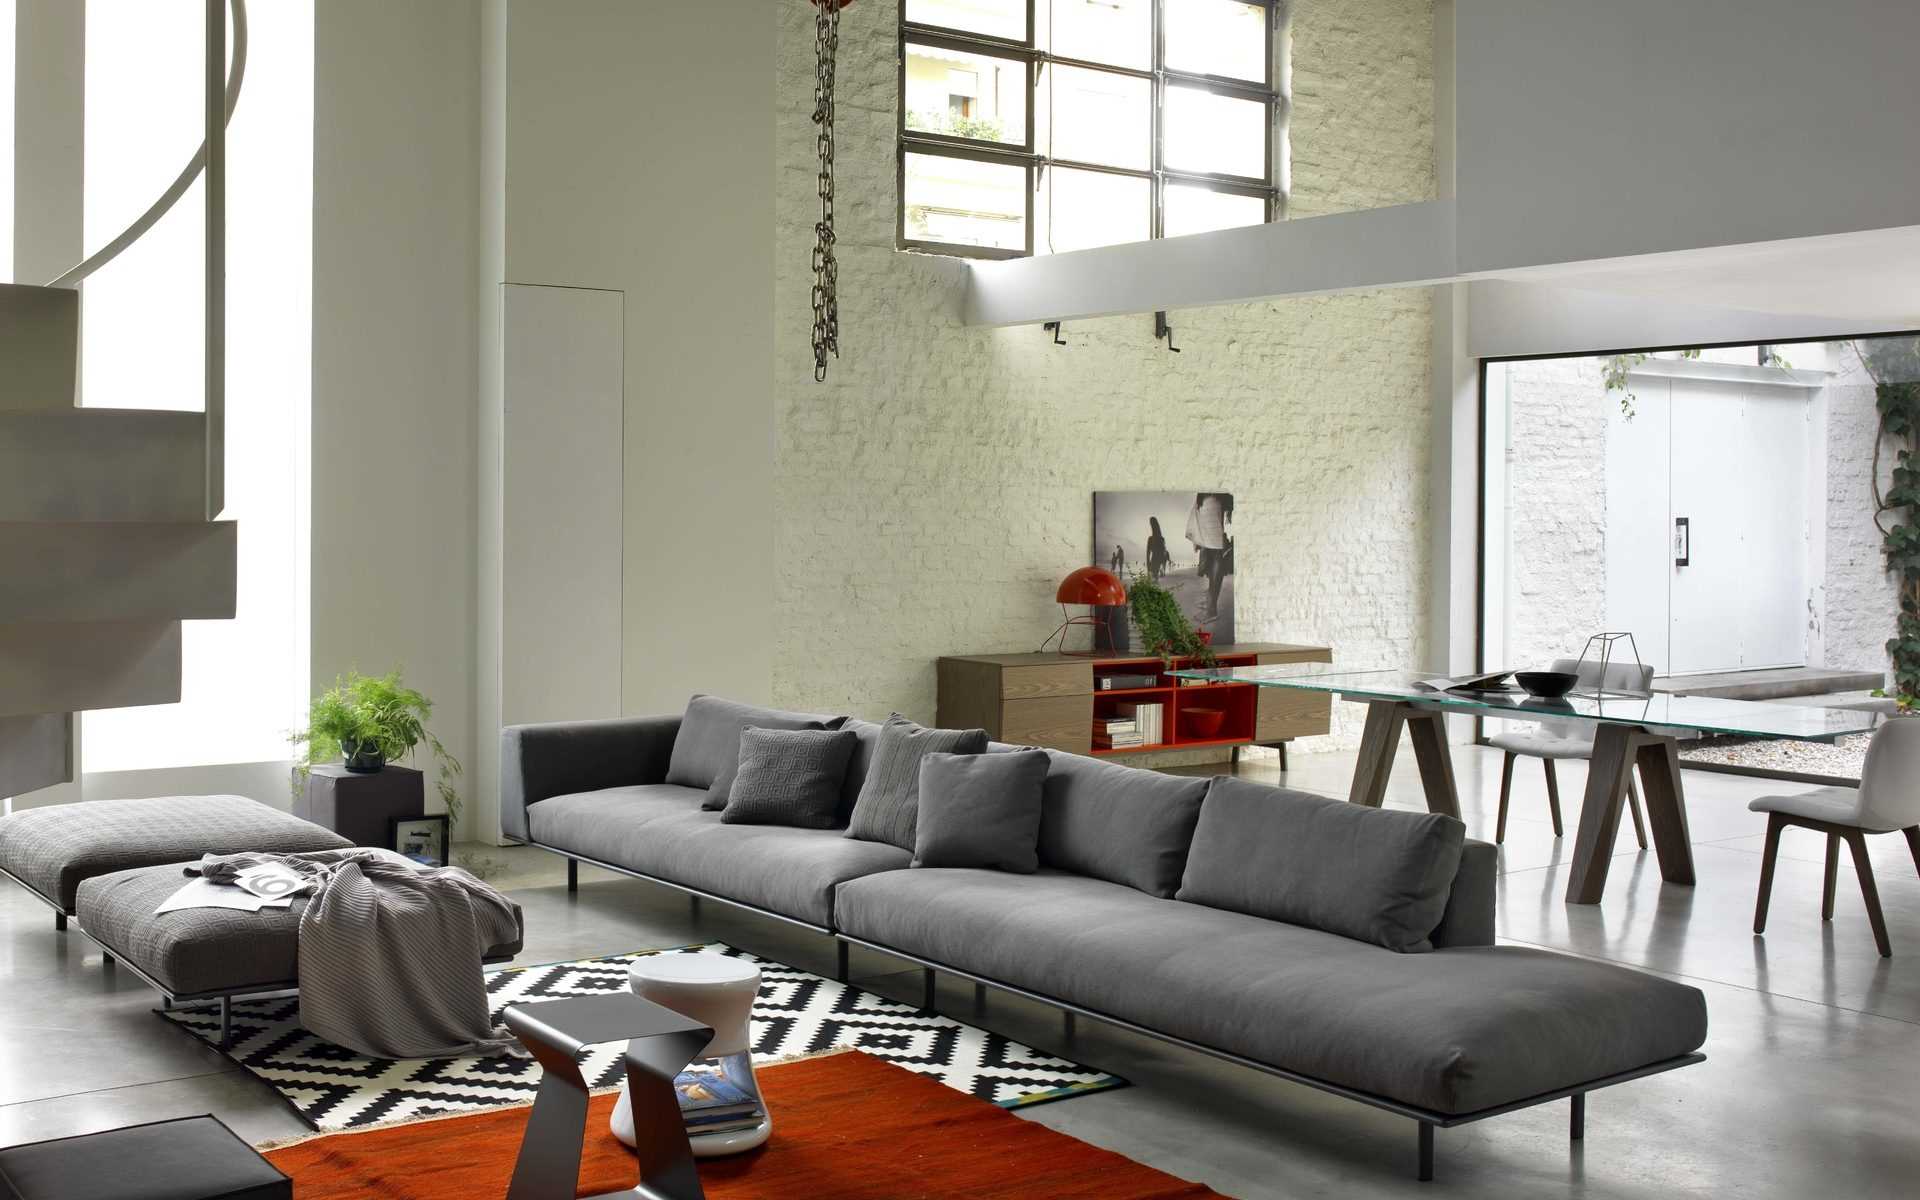 l'idea di un design insolito di un appartamento con un divano